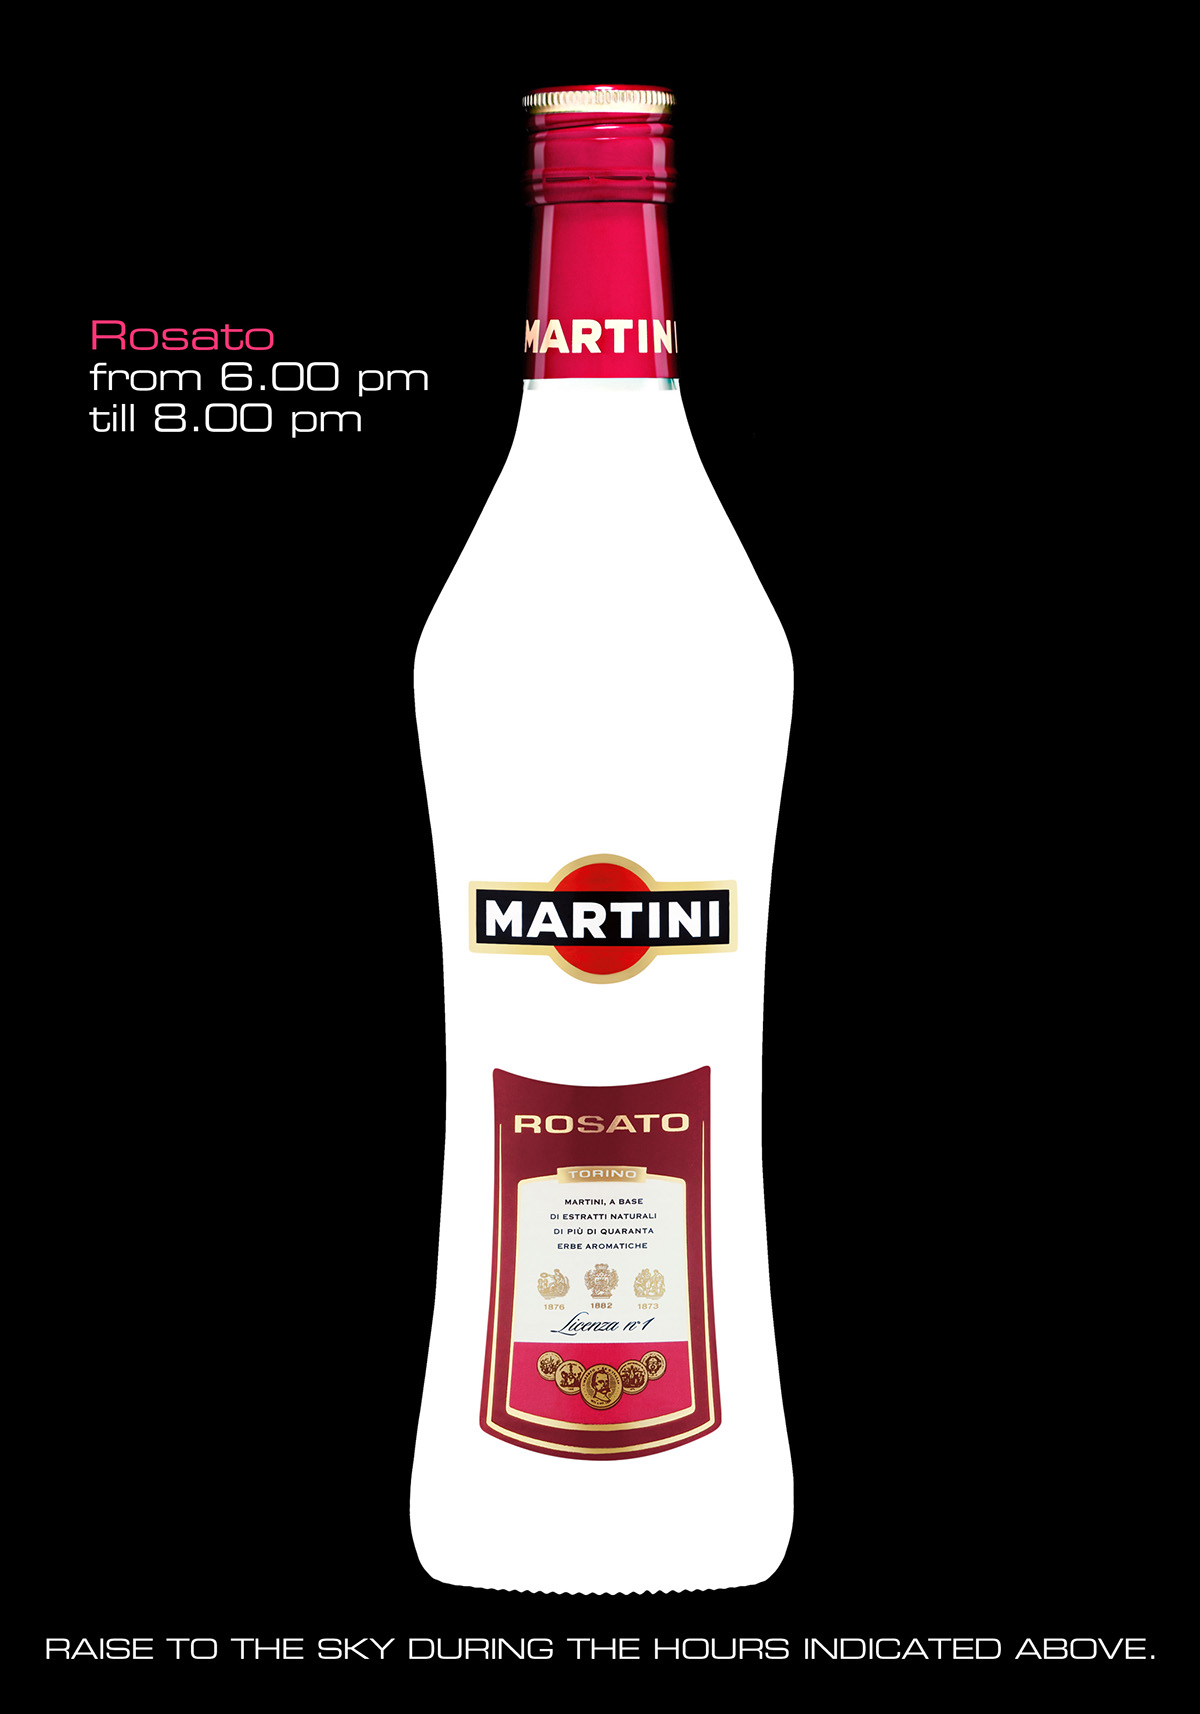 promo promocard Cartolina Martini rosato interactive Ambient bottle Barbara ghiotti